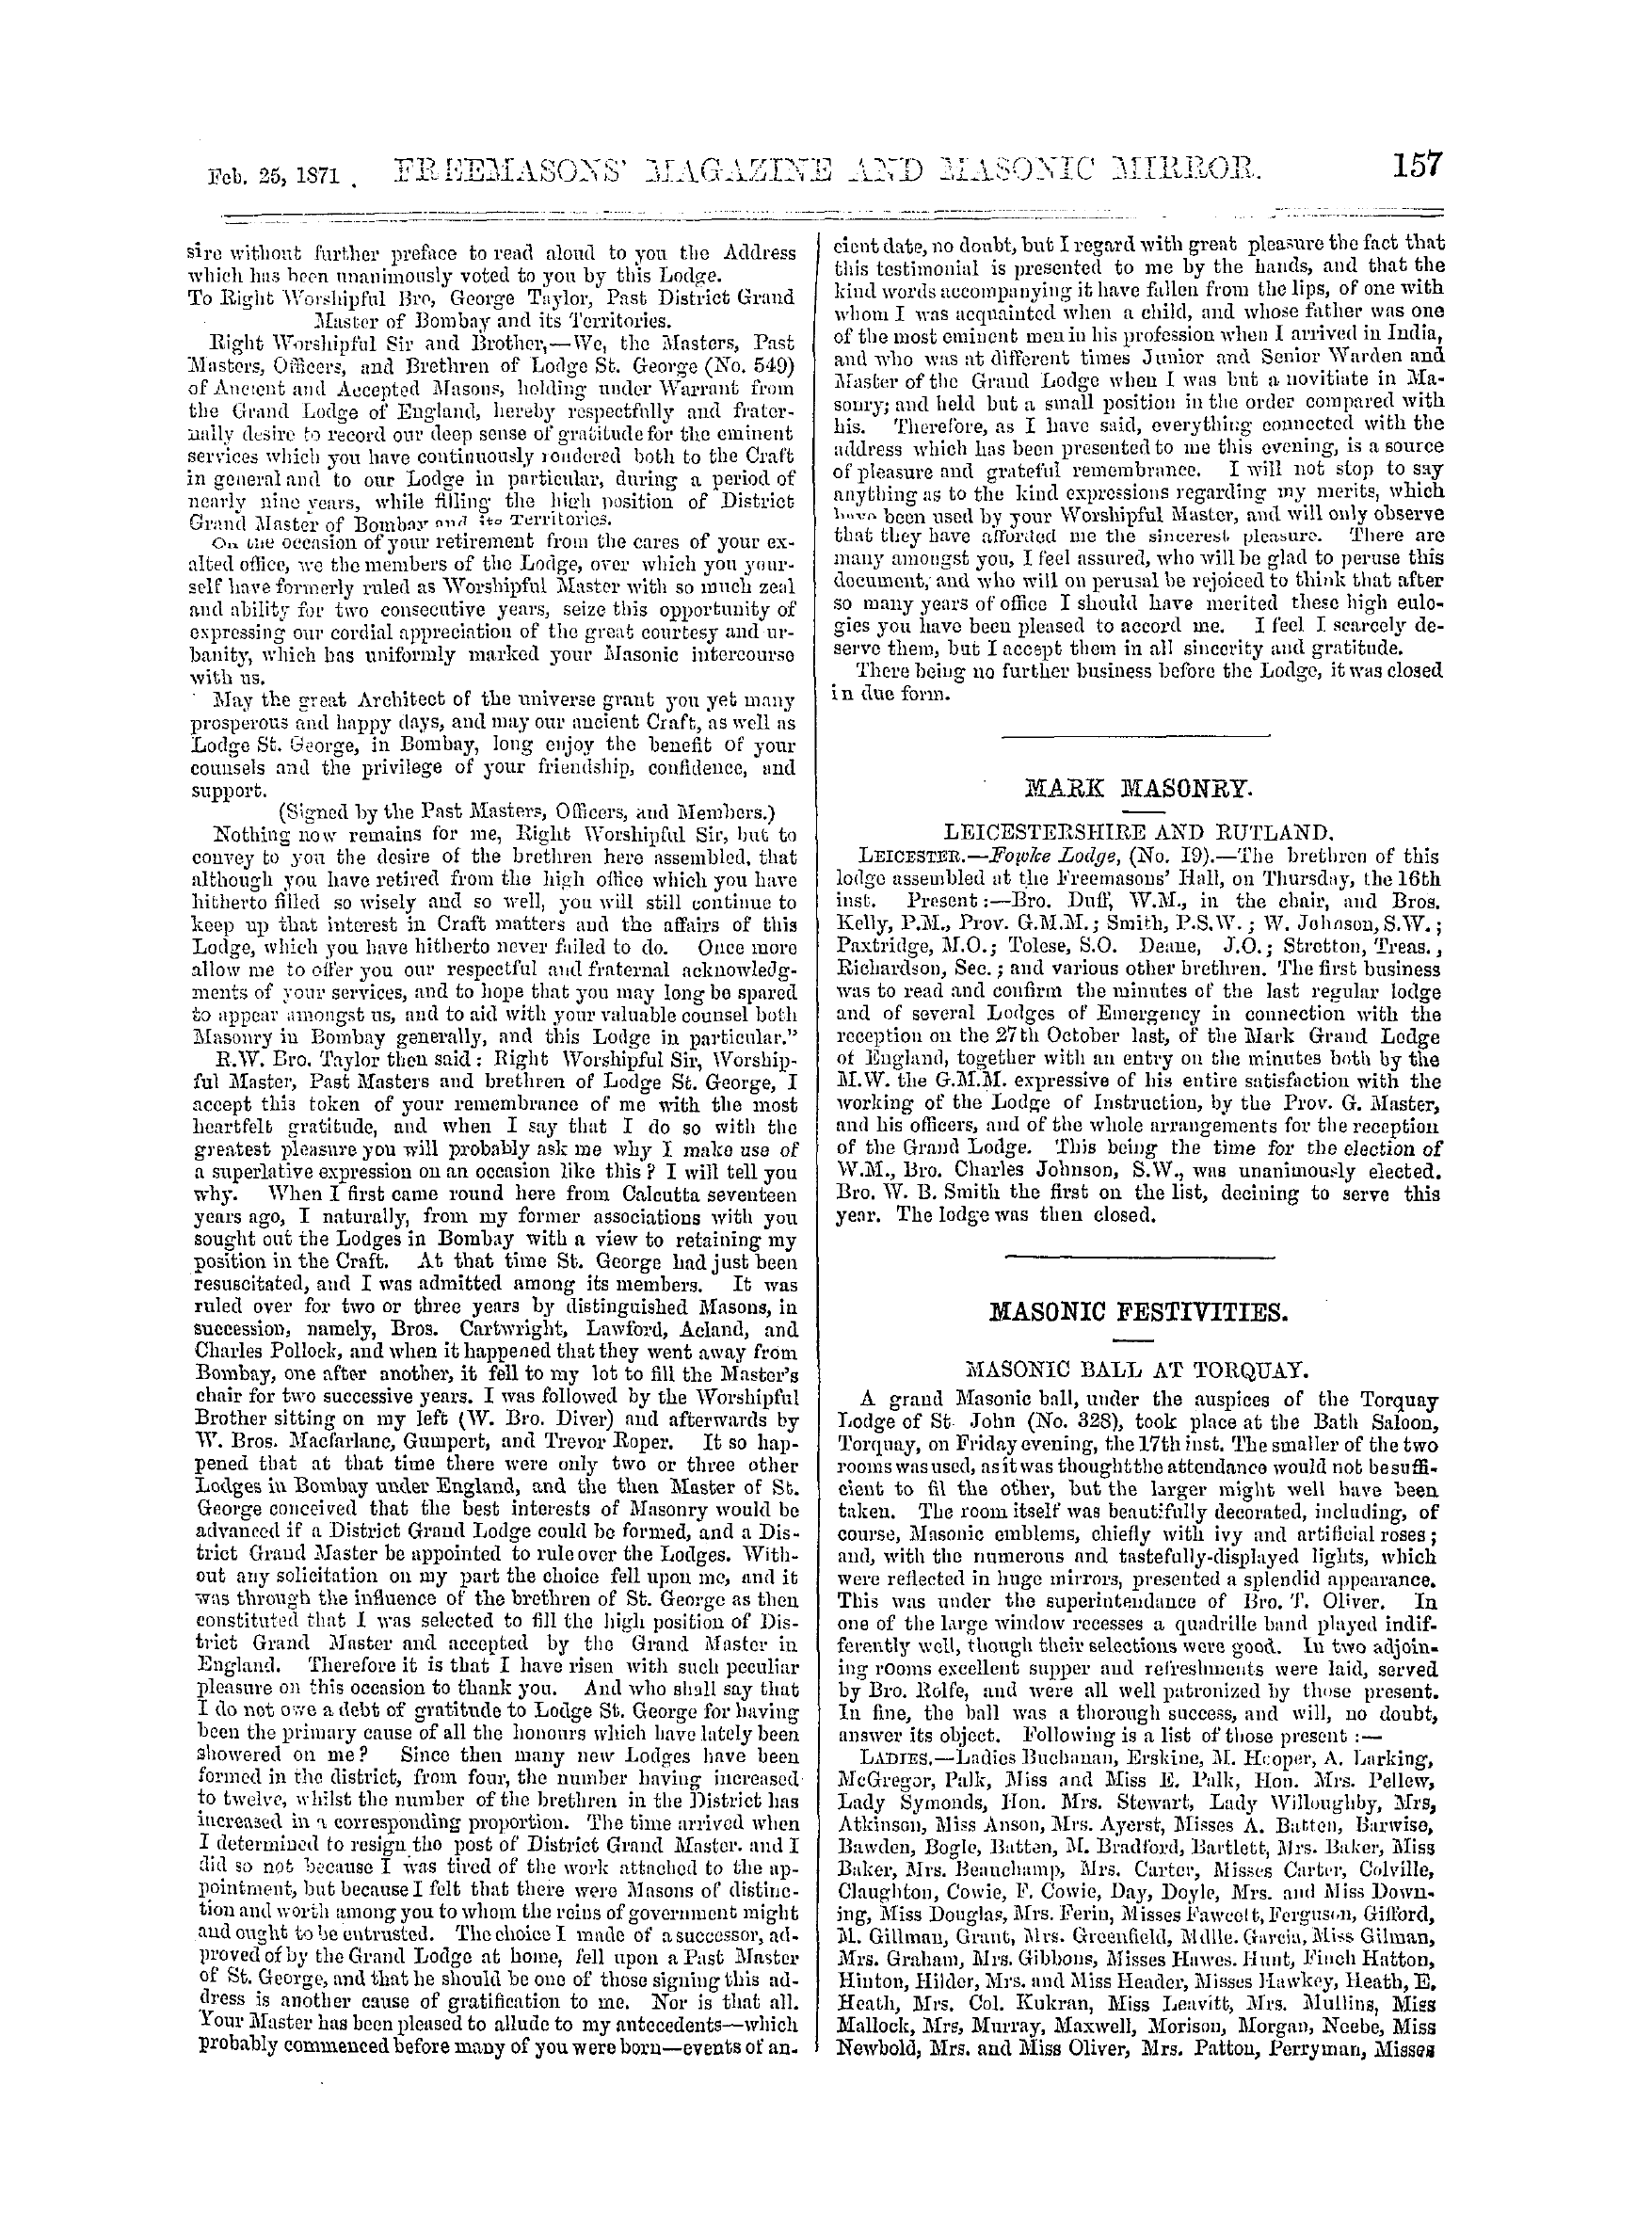 The Freemasons' Monthly Magazine: 1871-02-25 - India.